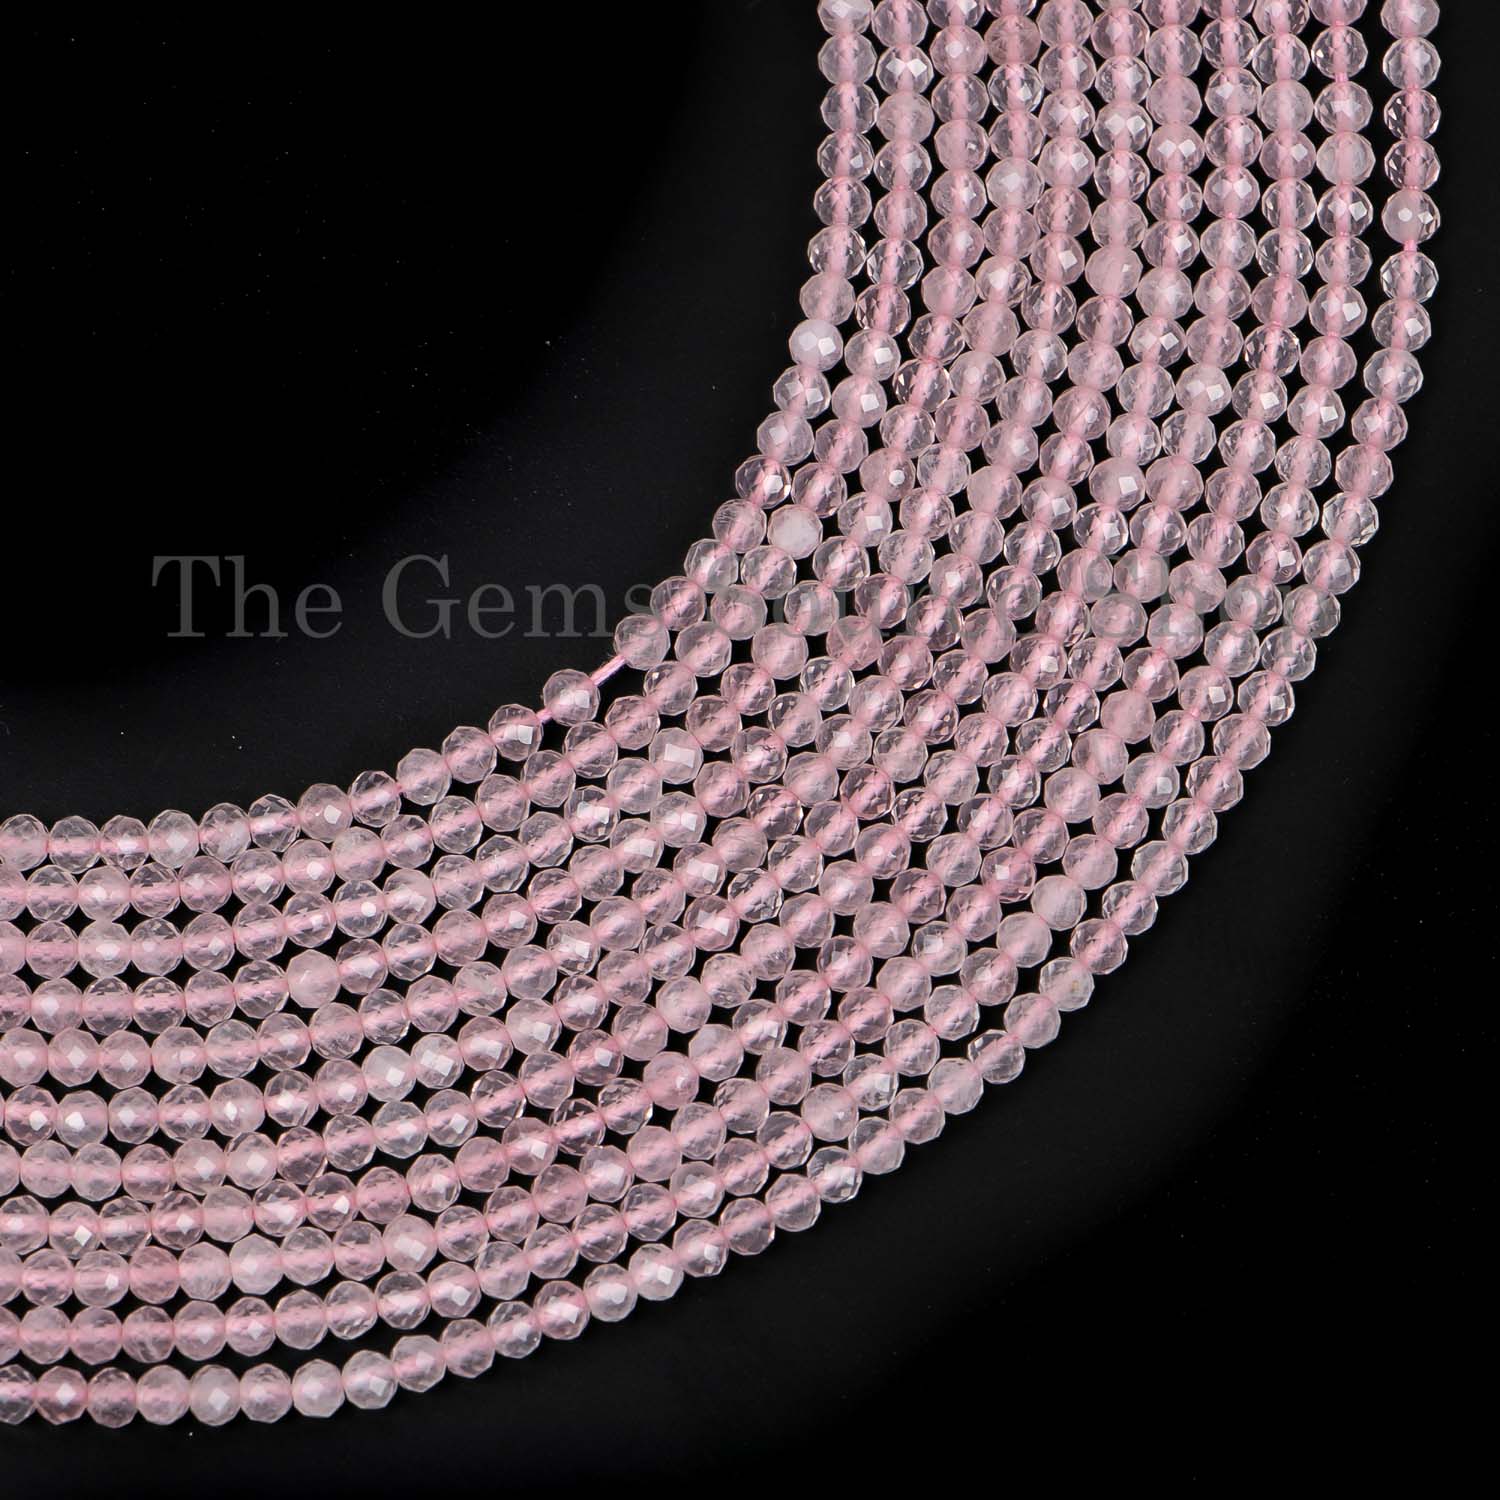 Rose Quartz Beads, Rose Quartz Rondelle Beads, Rose Quartz Faceted Beads, Rose Quartz Gemstone Beads